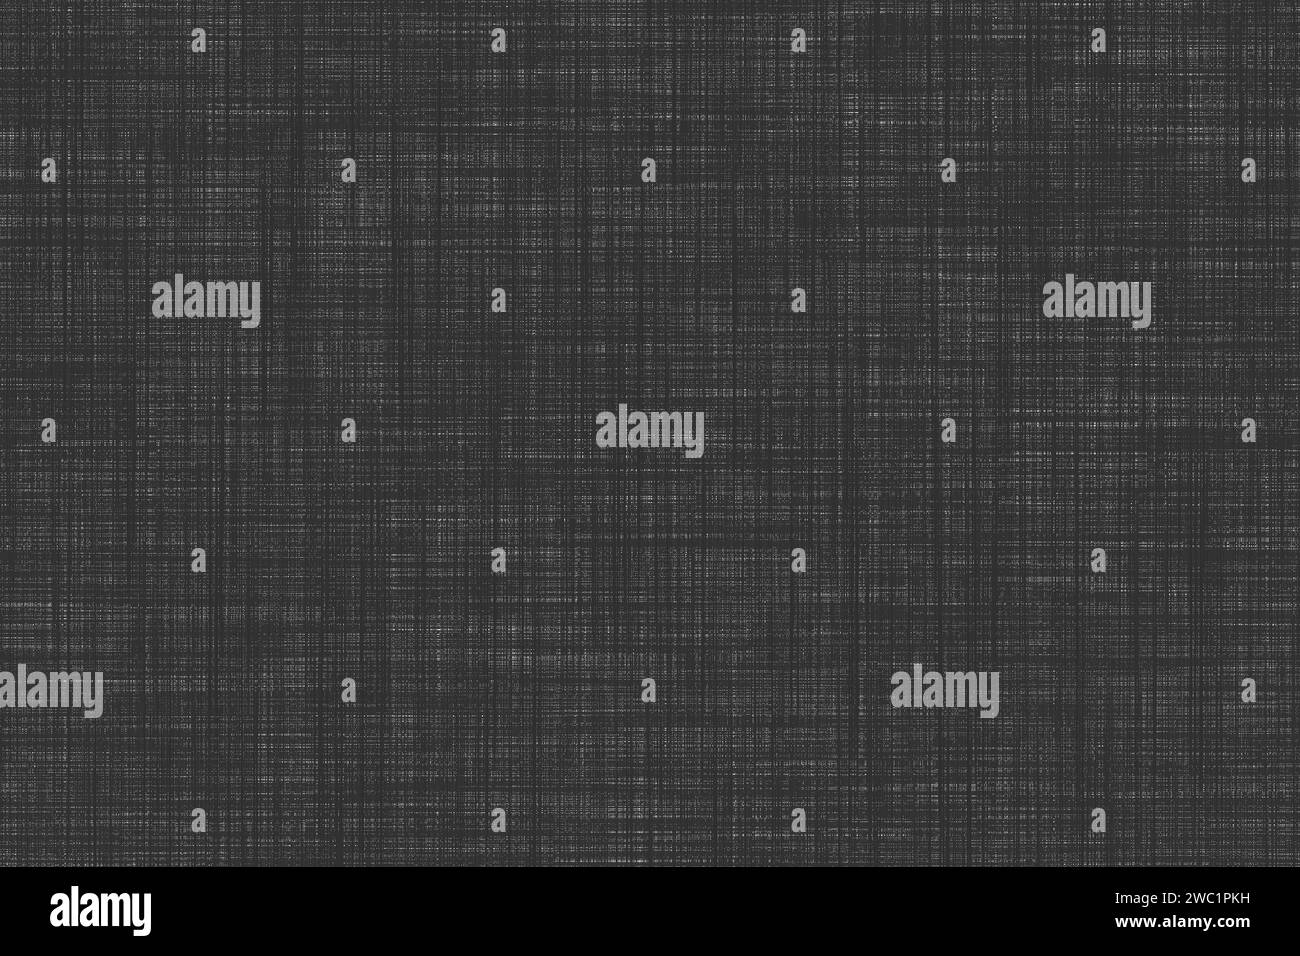 Eine elegante, strukturierte Schwarzweiß-Tapete, die sich perfekt als dezenter, moderner Hintergrund für verschiedene Anwendungen eignet. Hochwertige Abbildung Stockfoto